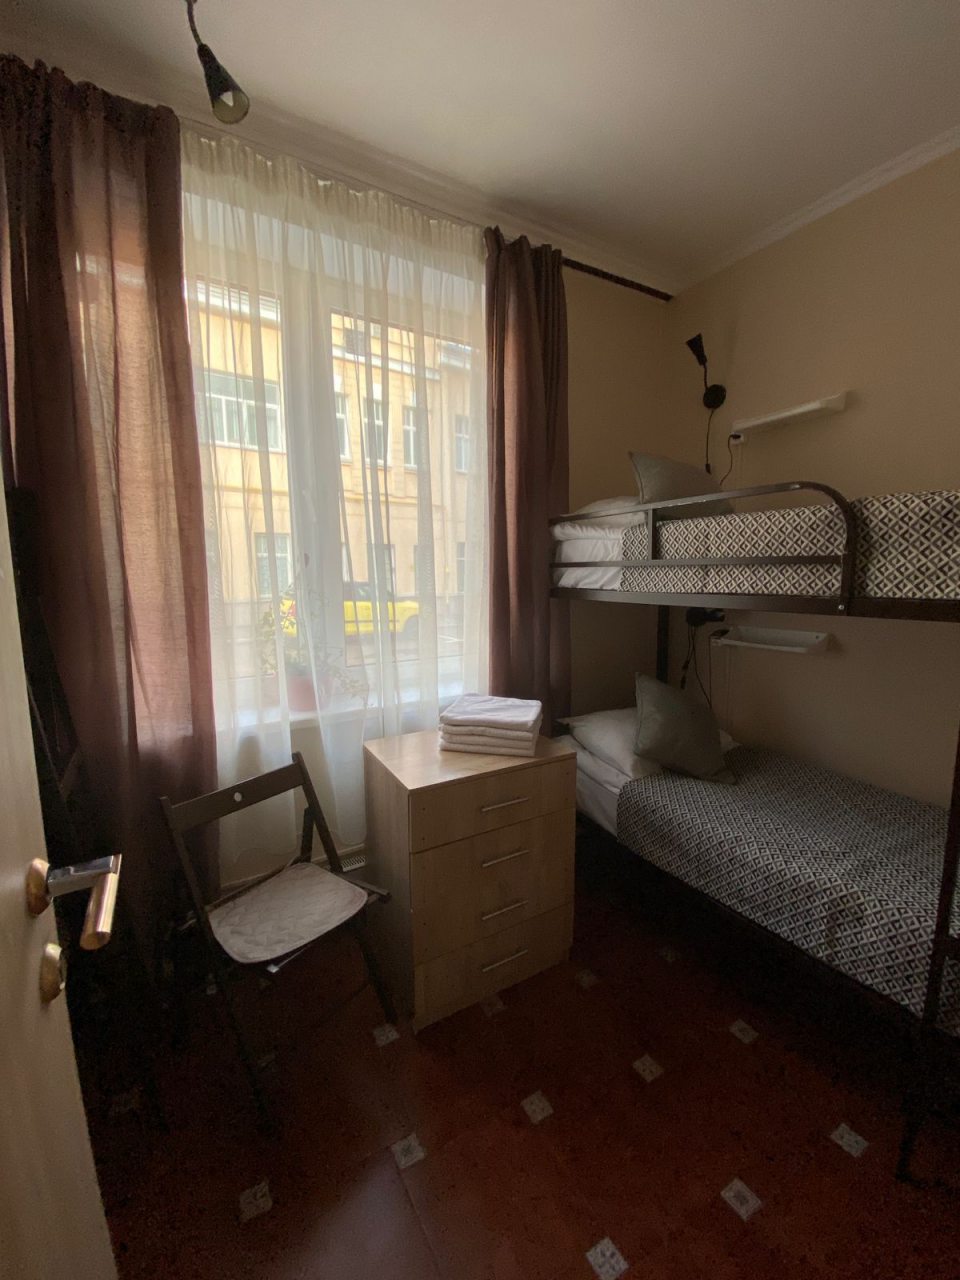 Четырехместный (Room 8.  4-х местный номер с двумя двухъярусными кроватями (как семейный номер)) хостела Астра на Арбате, Москва